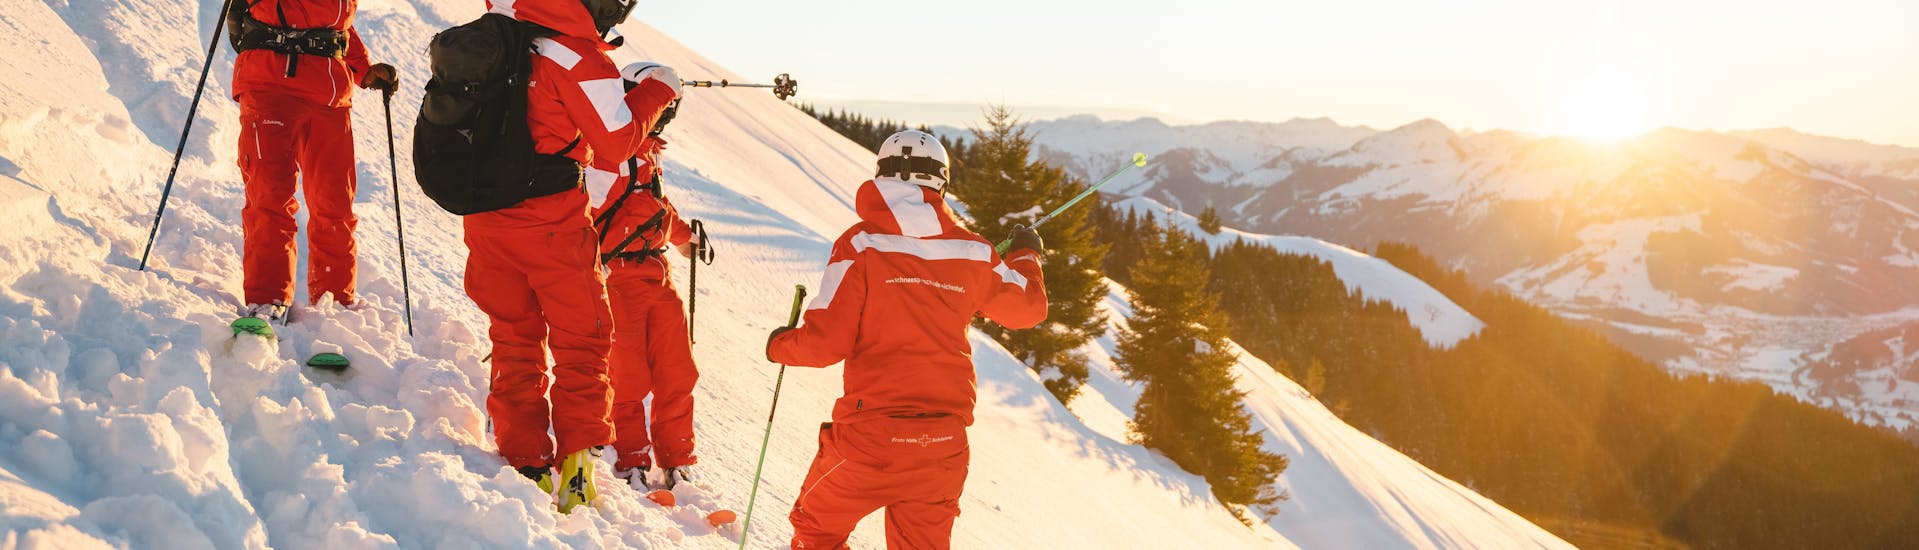 Privé skilessen voor volwassenen - ervaren.